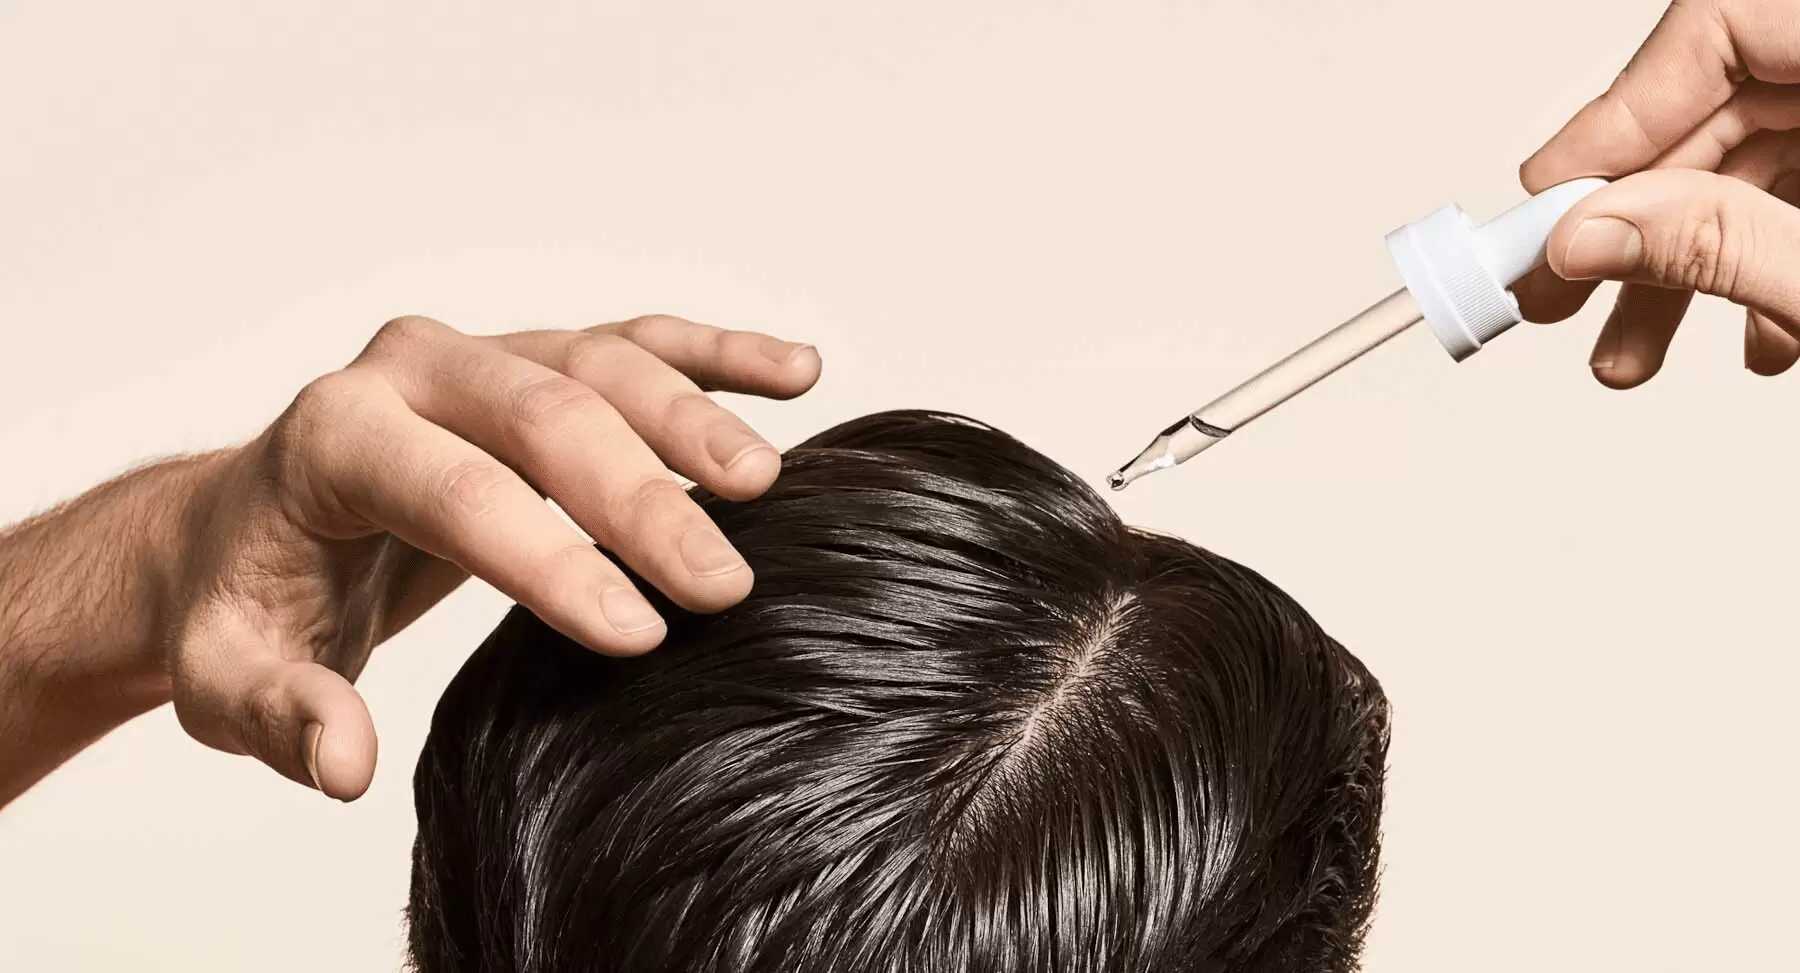 استخدام الزيوت بعد زراعة الشعر